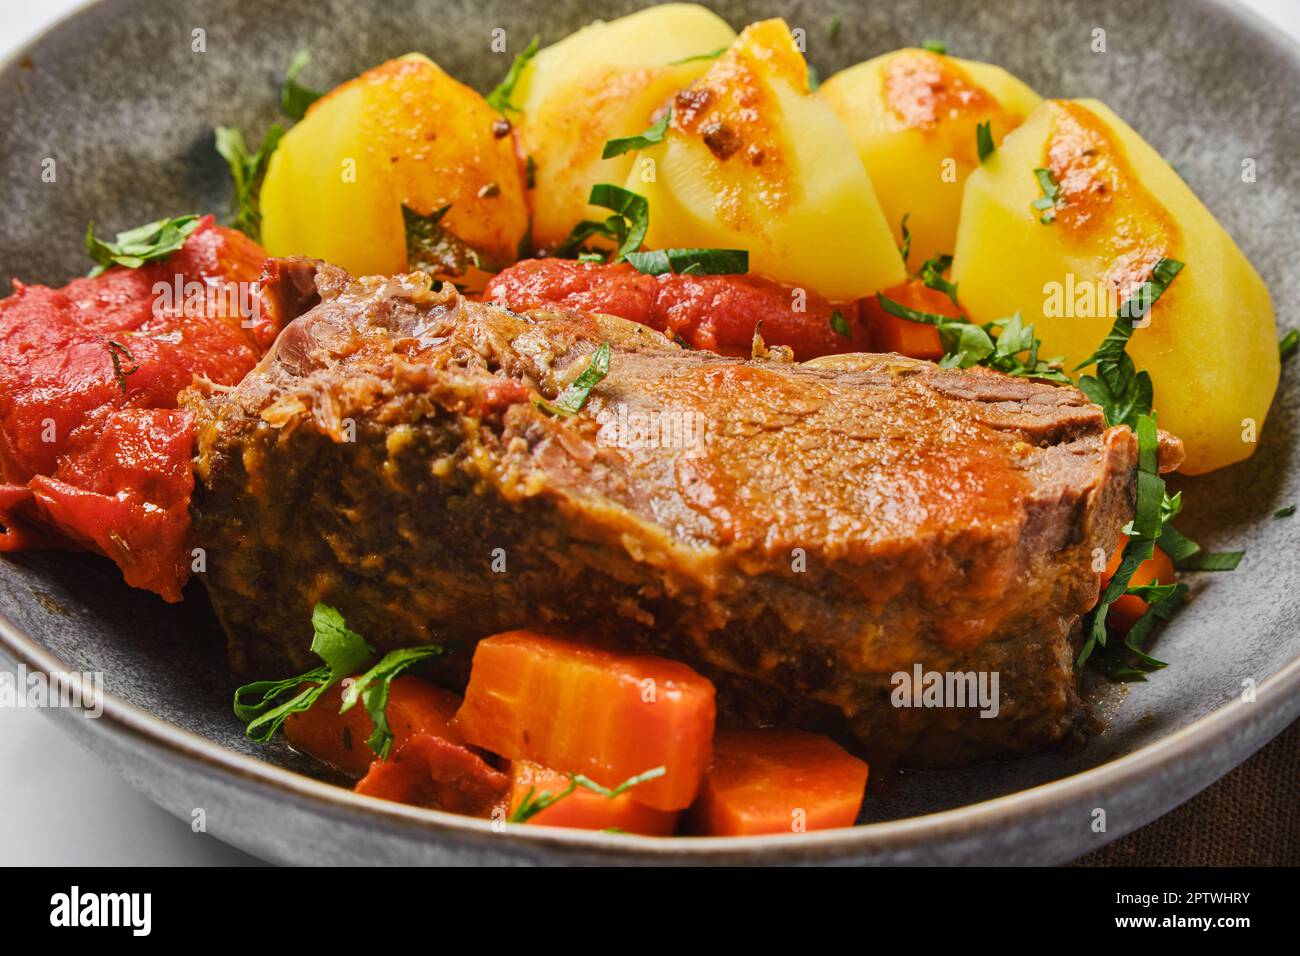 Vue en gros plan de la viande de rôti de bœuf rond cuite dans de la sauce à la bière avec des tomates et des carottes Banque D'Images